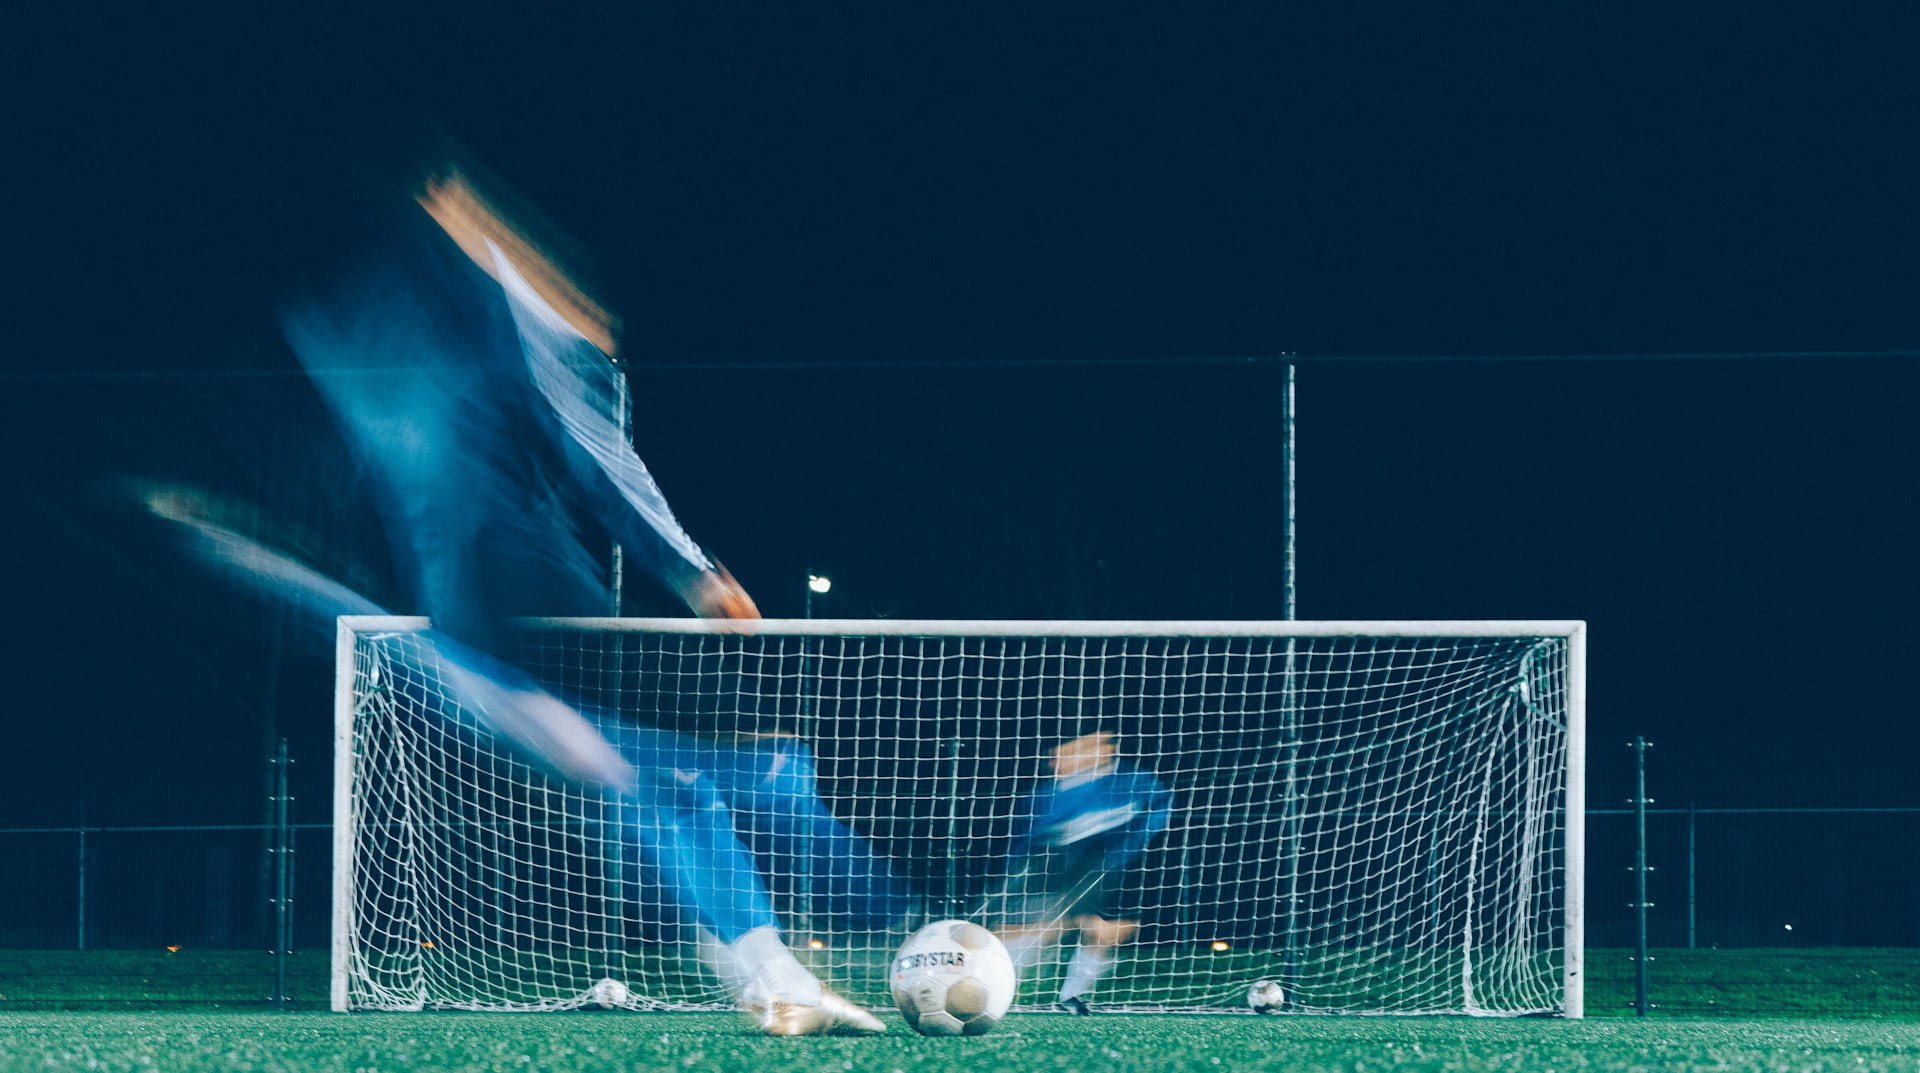 Zeitrafferfoto von zwei Fußballspielern, von denen ein Spieler einen Ball ins Tor schießt.